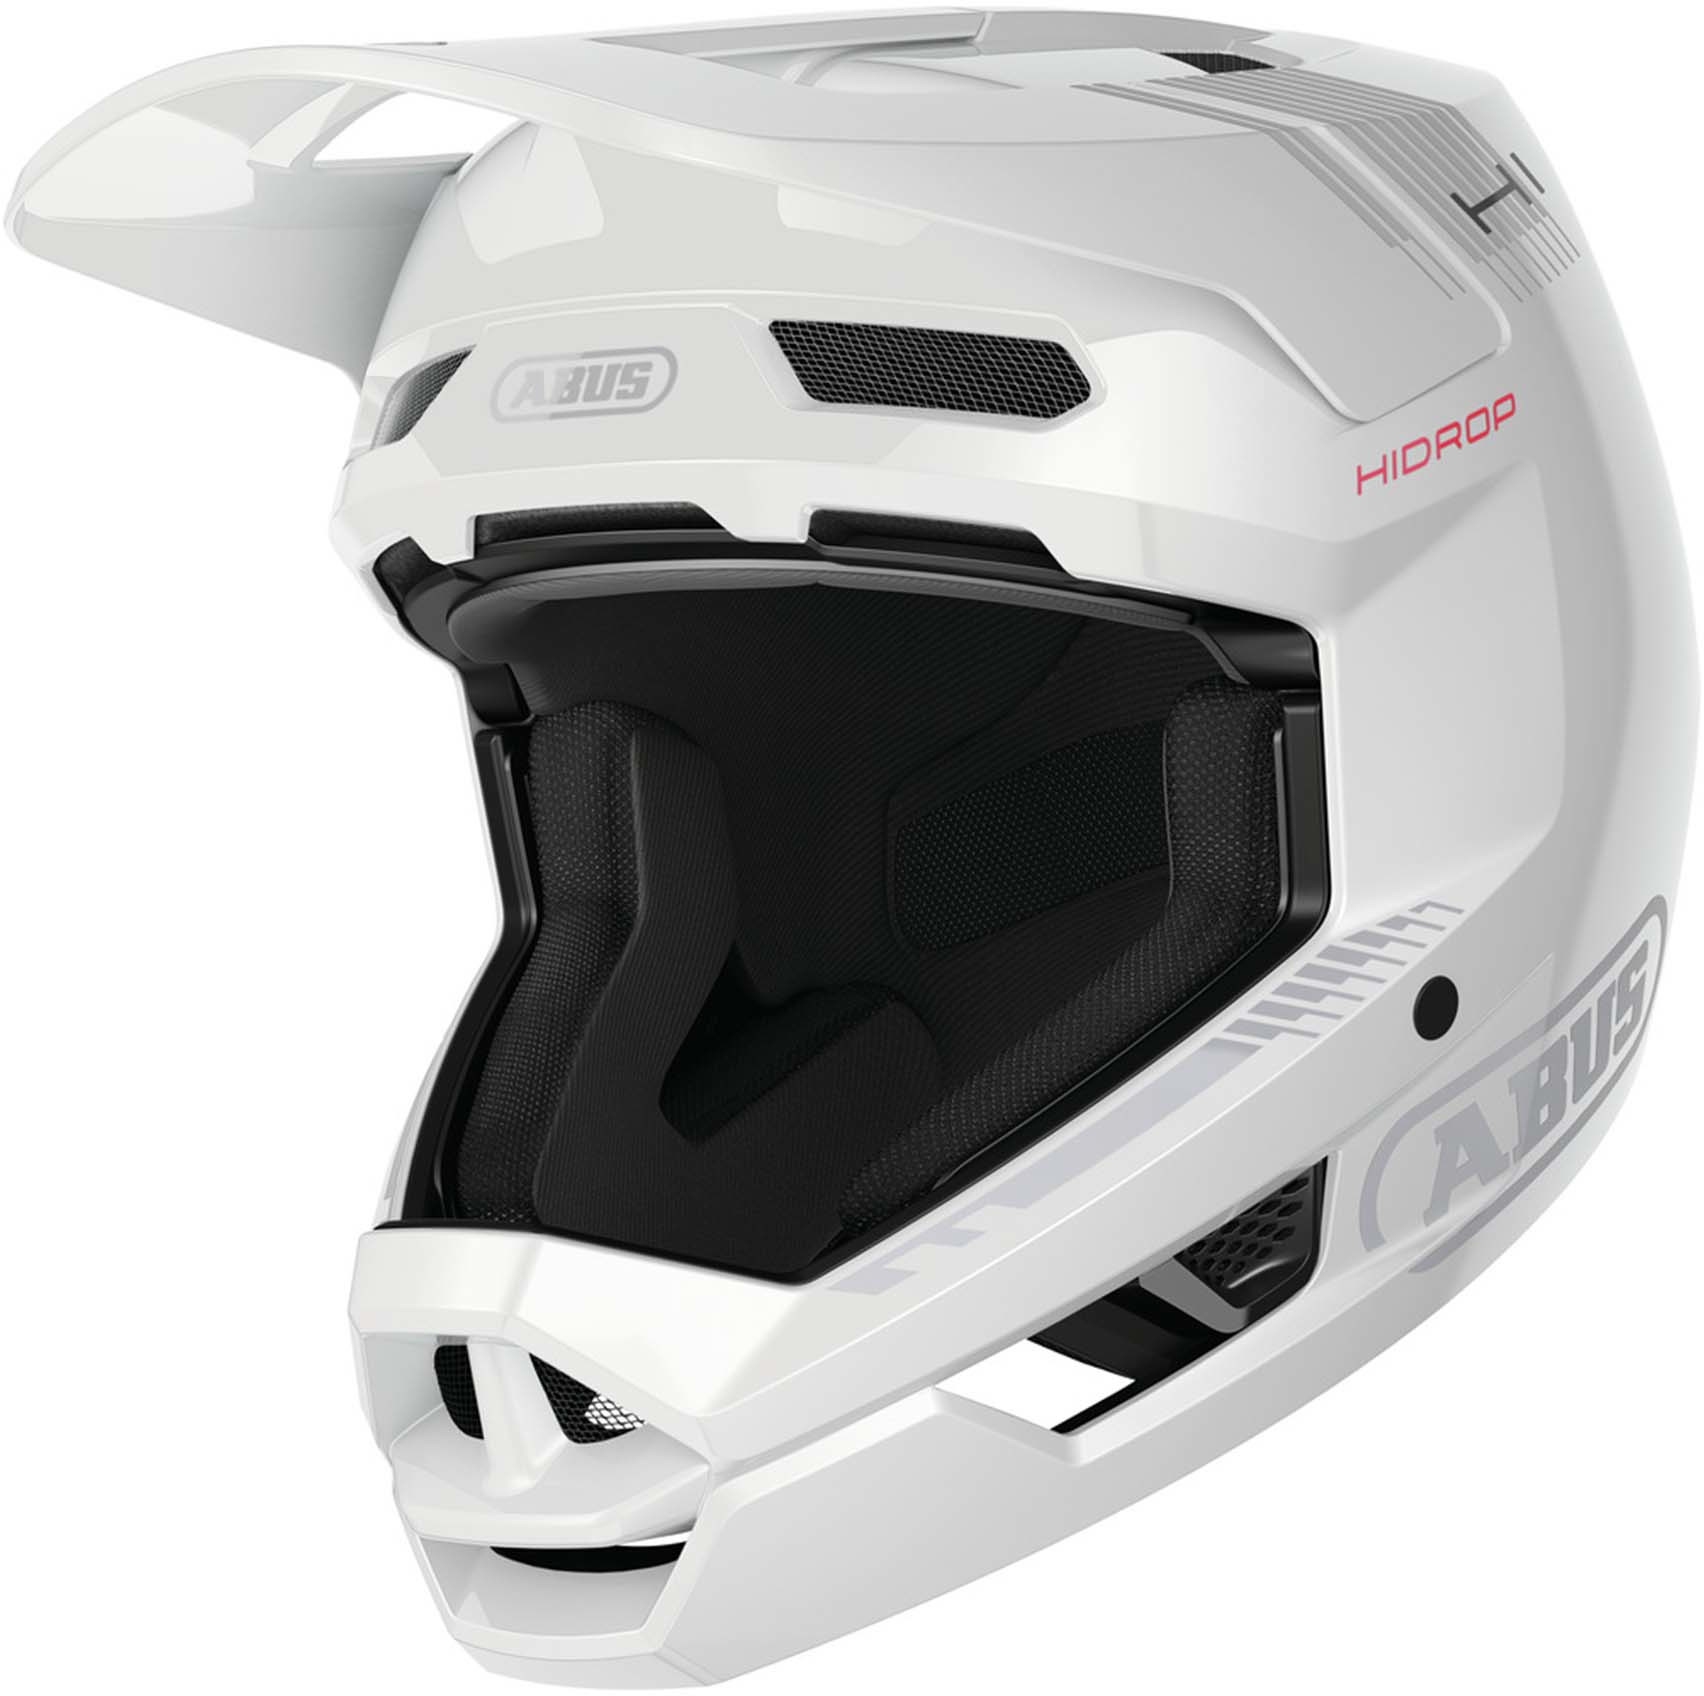 Produktbild von ABUS Hidrop Full Face Helm - shiny white